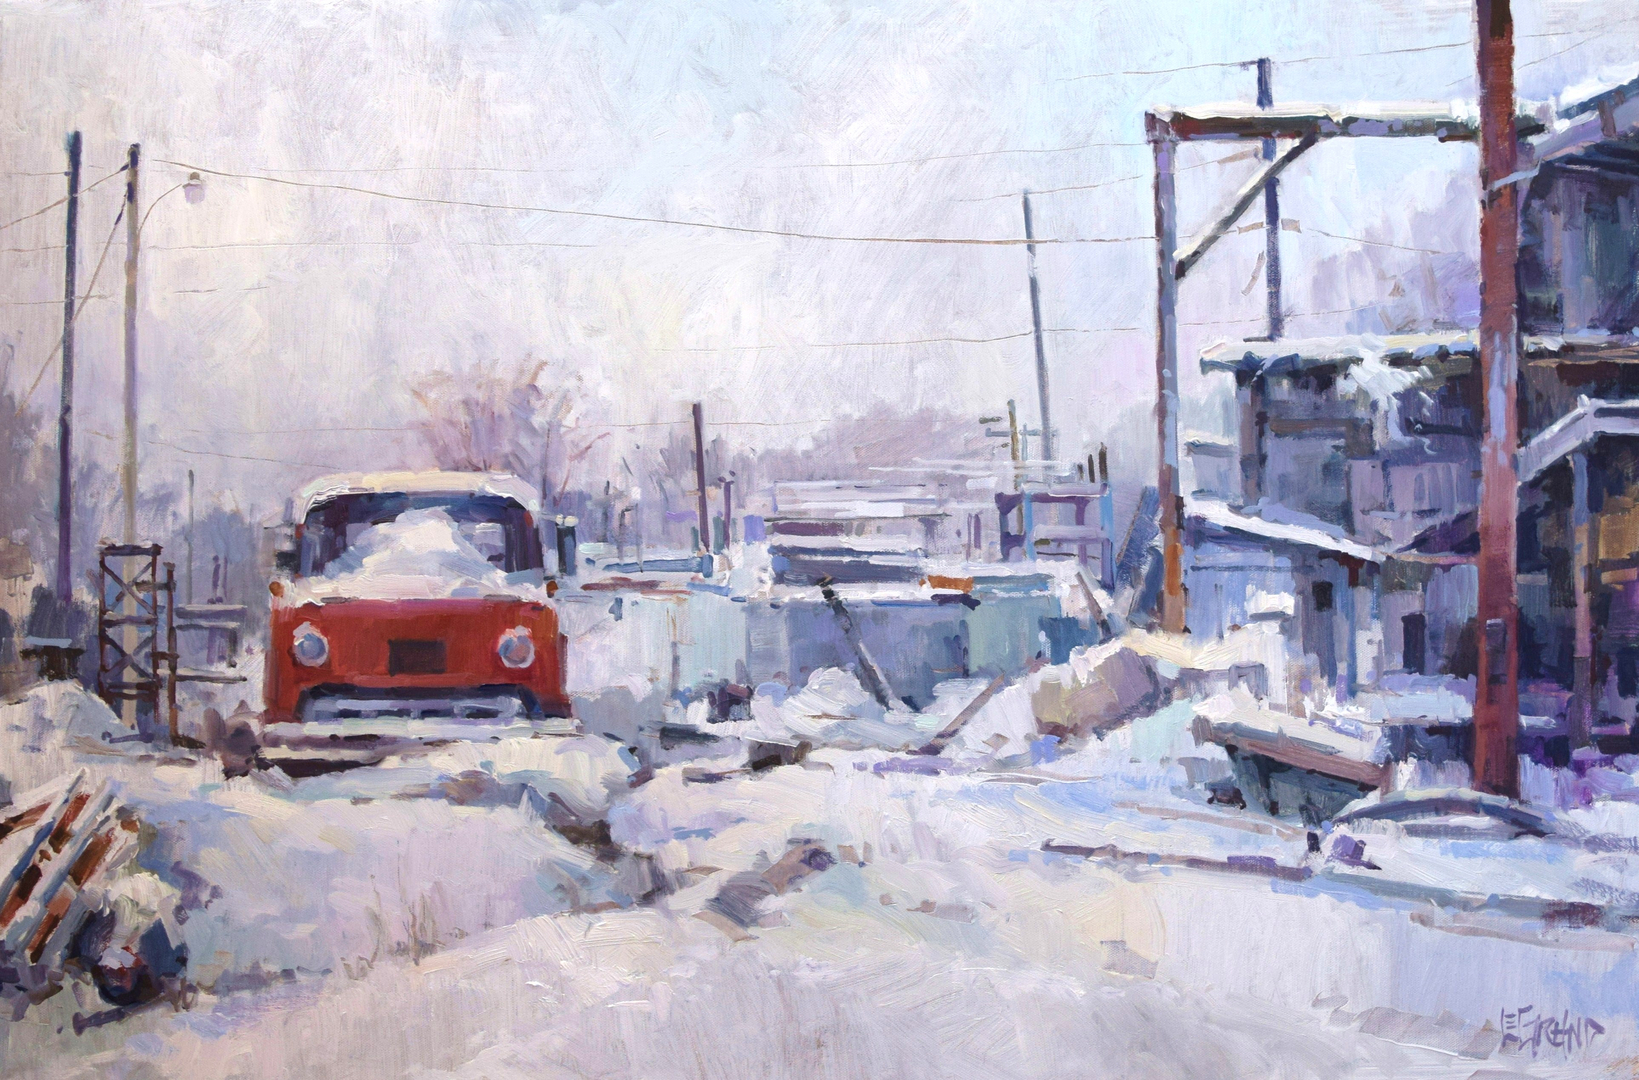 wyatt legrand acrylic painting of a snowy junkyard